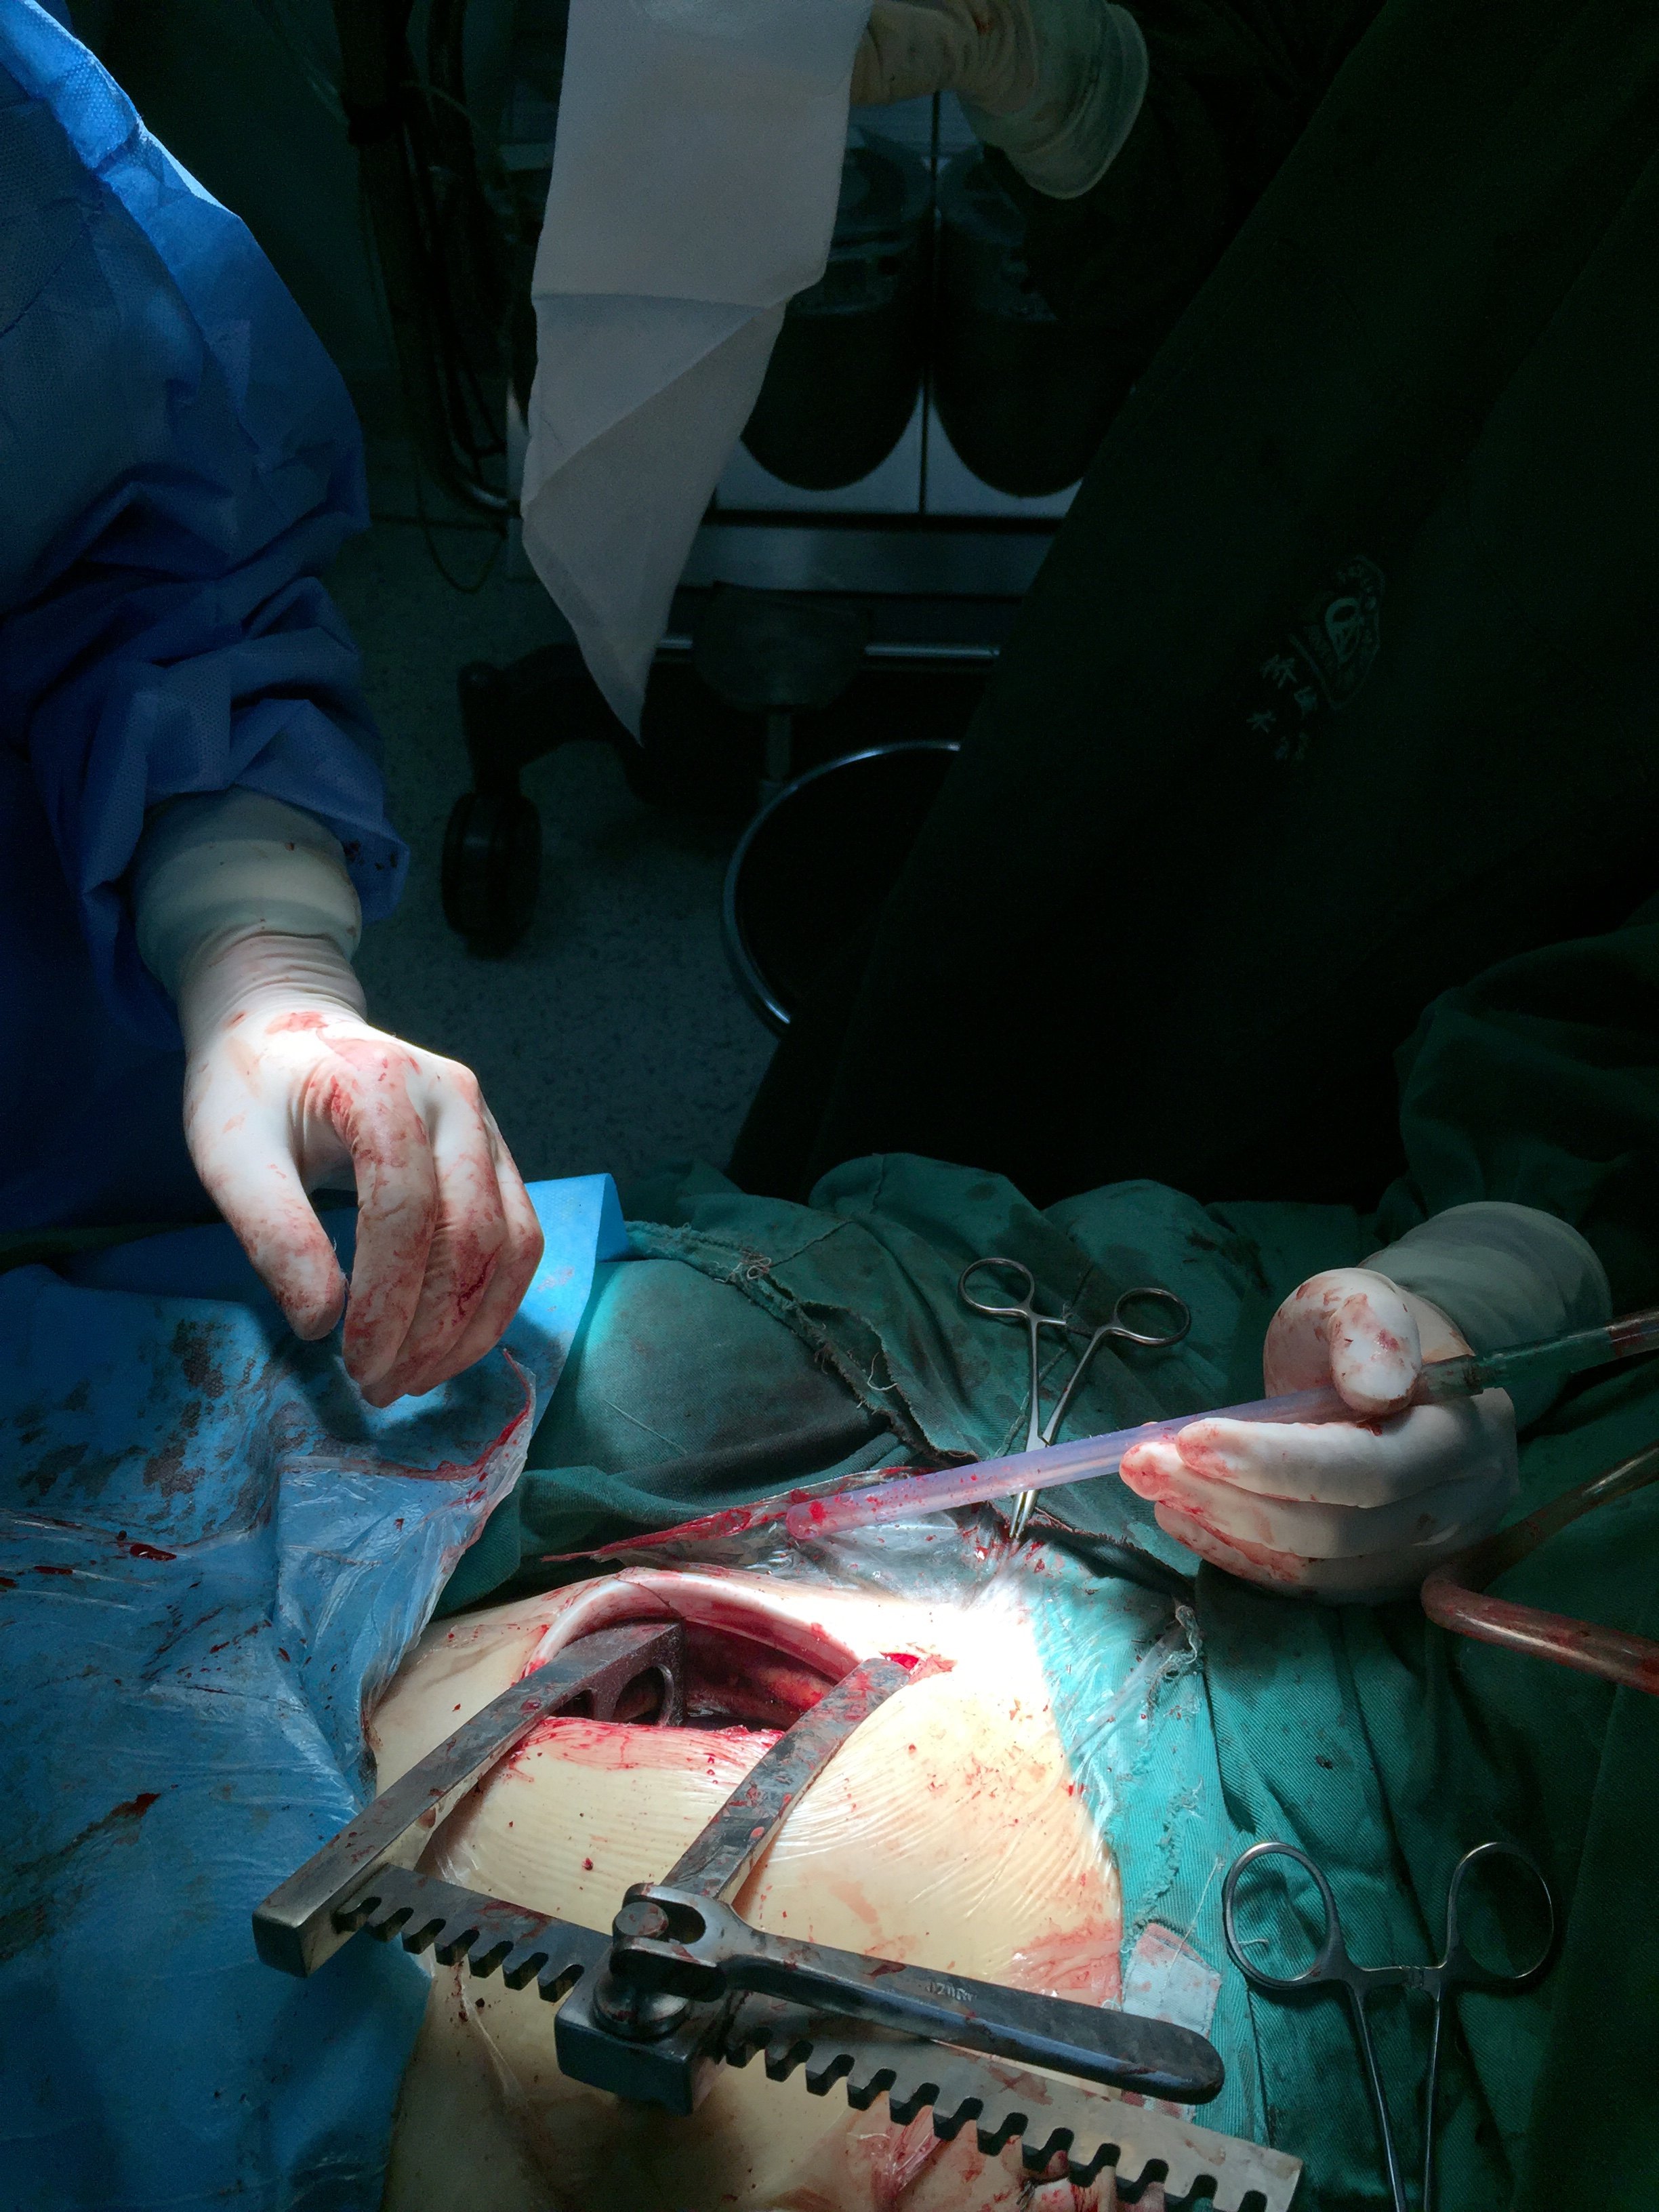 病手术方面出现了不同于传统的正中胸骨切口微创手术,如胸骨旁小切口